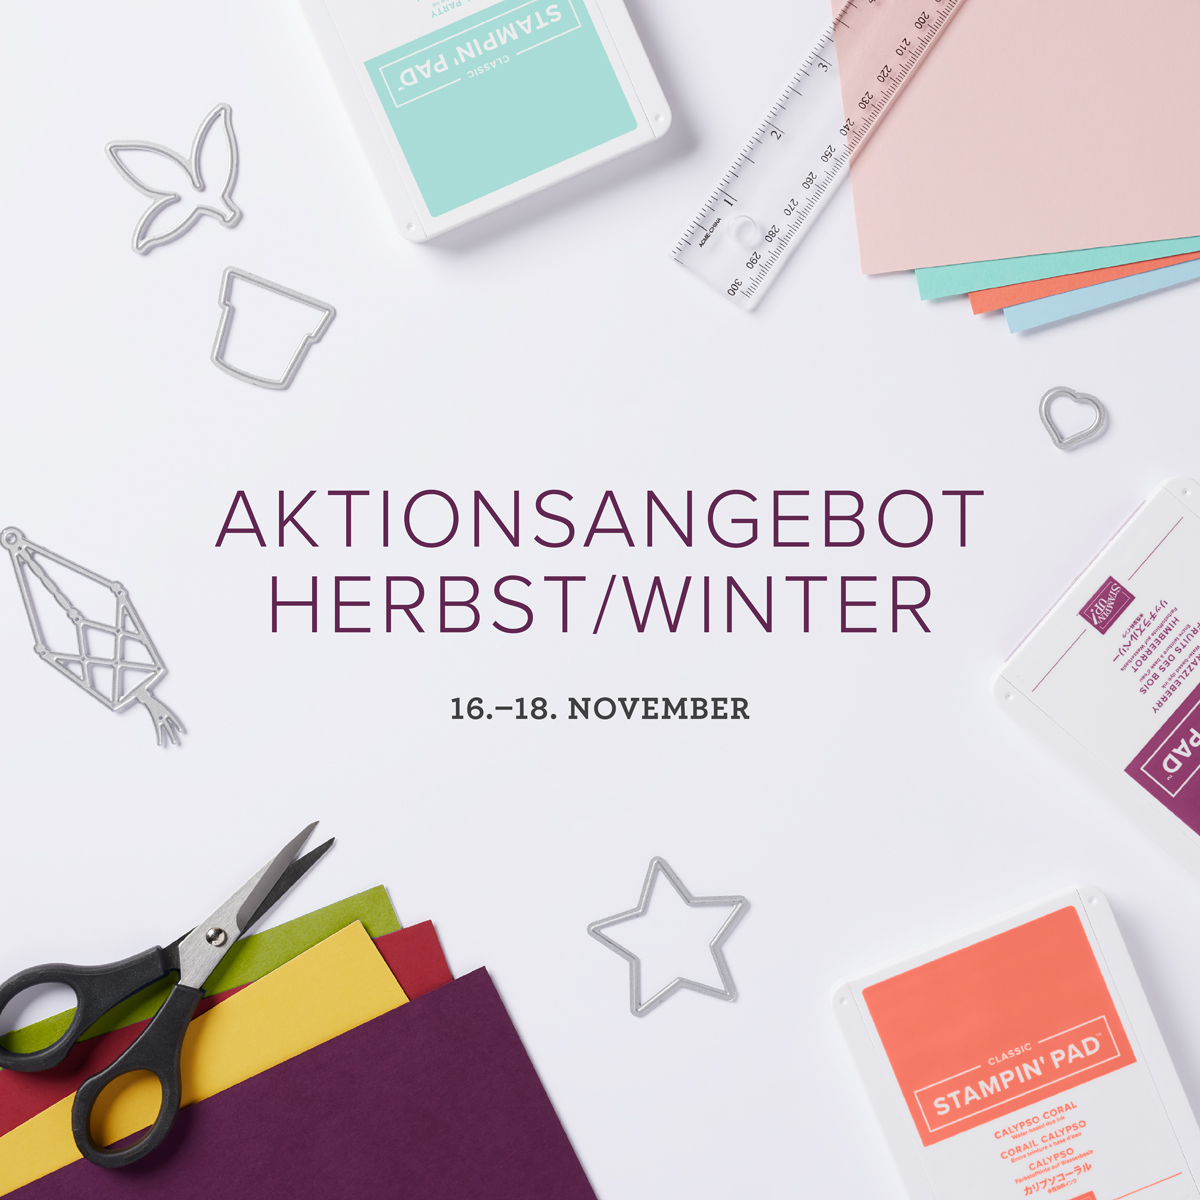 Aktionsangebot Herbst / Winter vom 16.-18 November